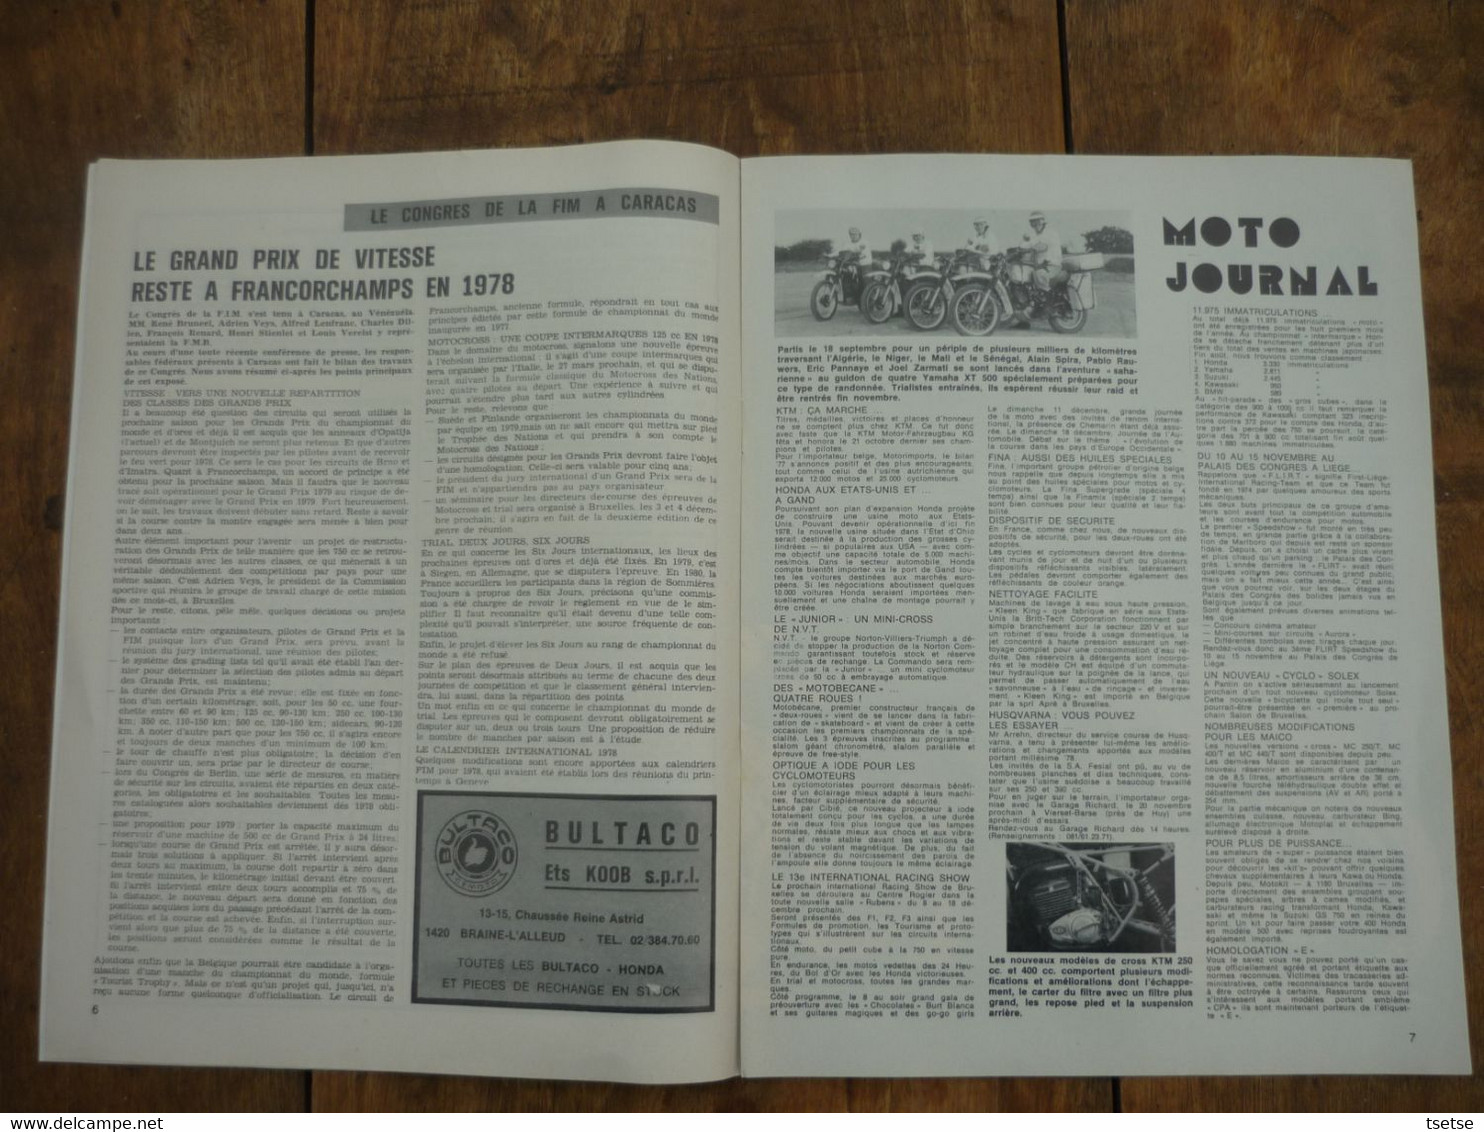 Revue Moto Magazine - N° 19 - 11 Novembre 1977 - Moto